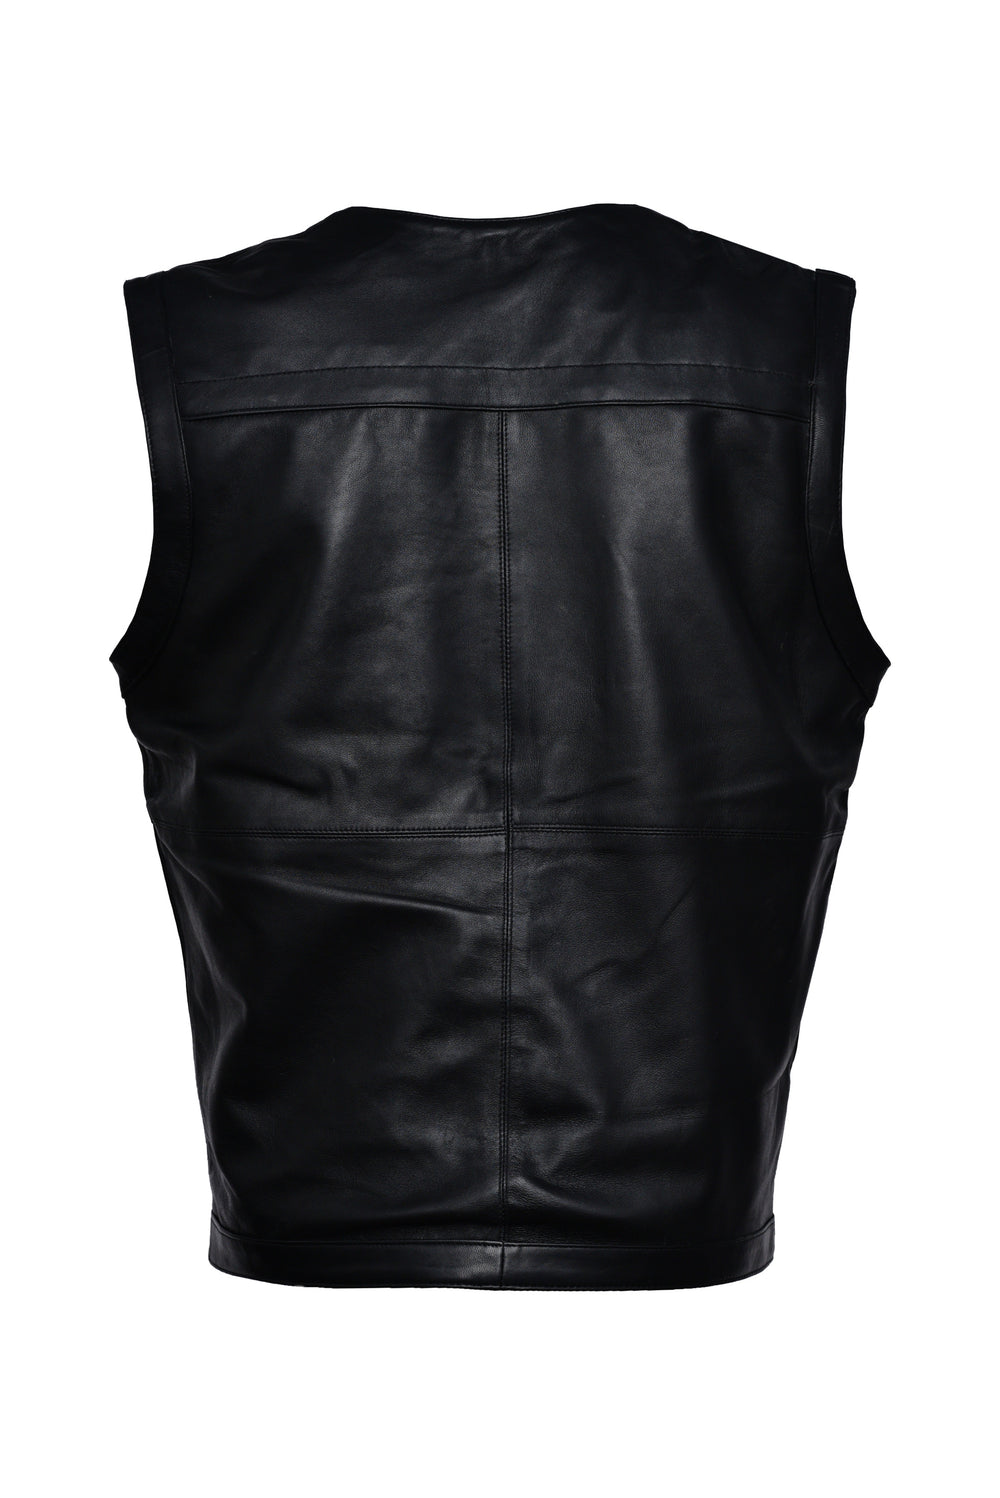 Black Leather Vest For Men